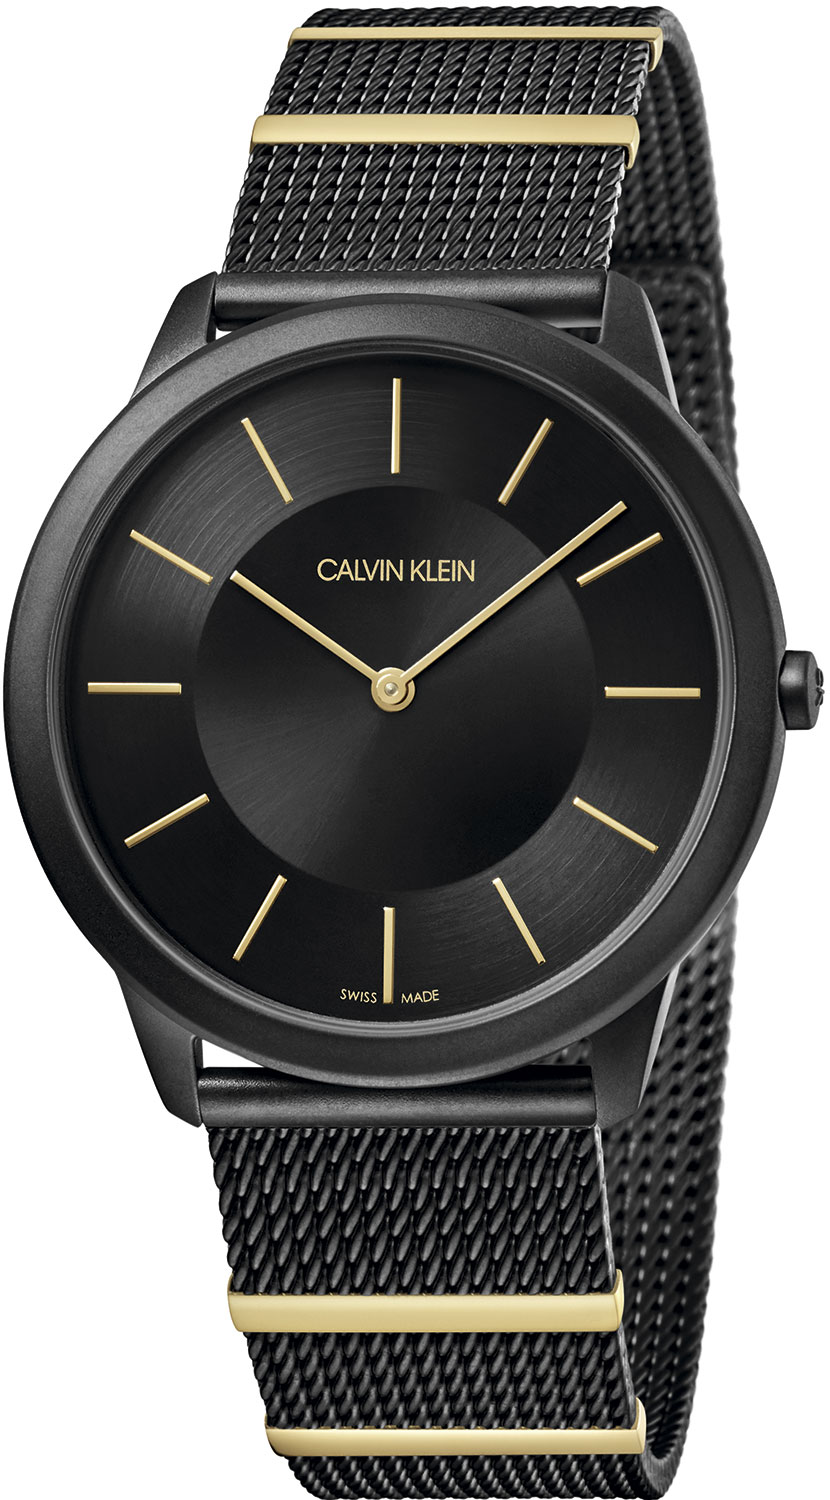 Швейцарские наручные часы Calvin Klein K3M514Z1